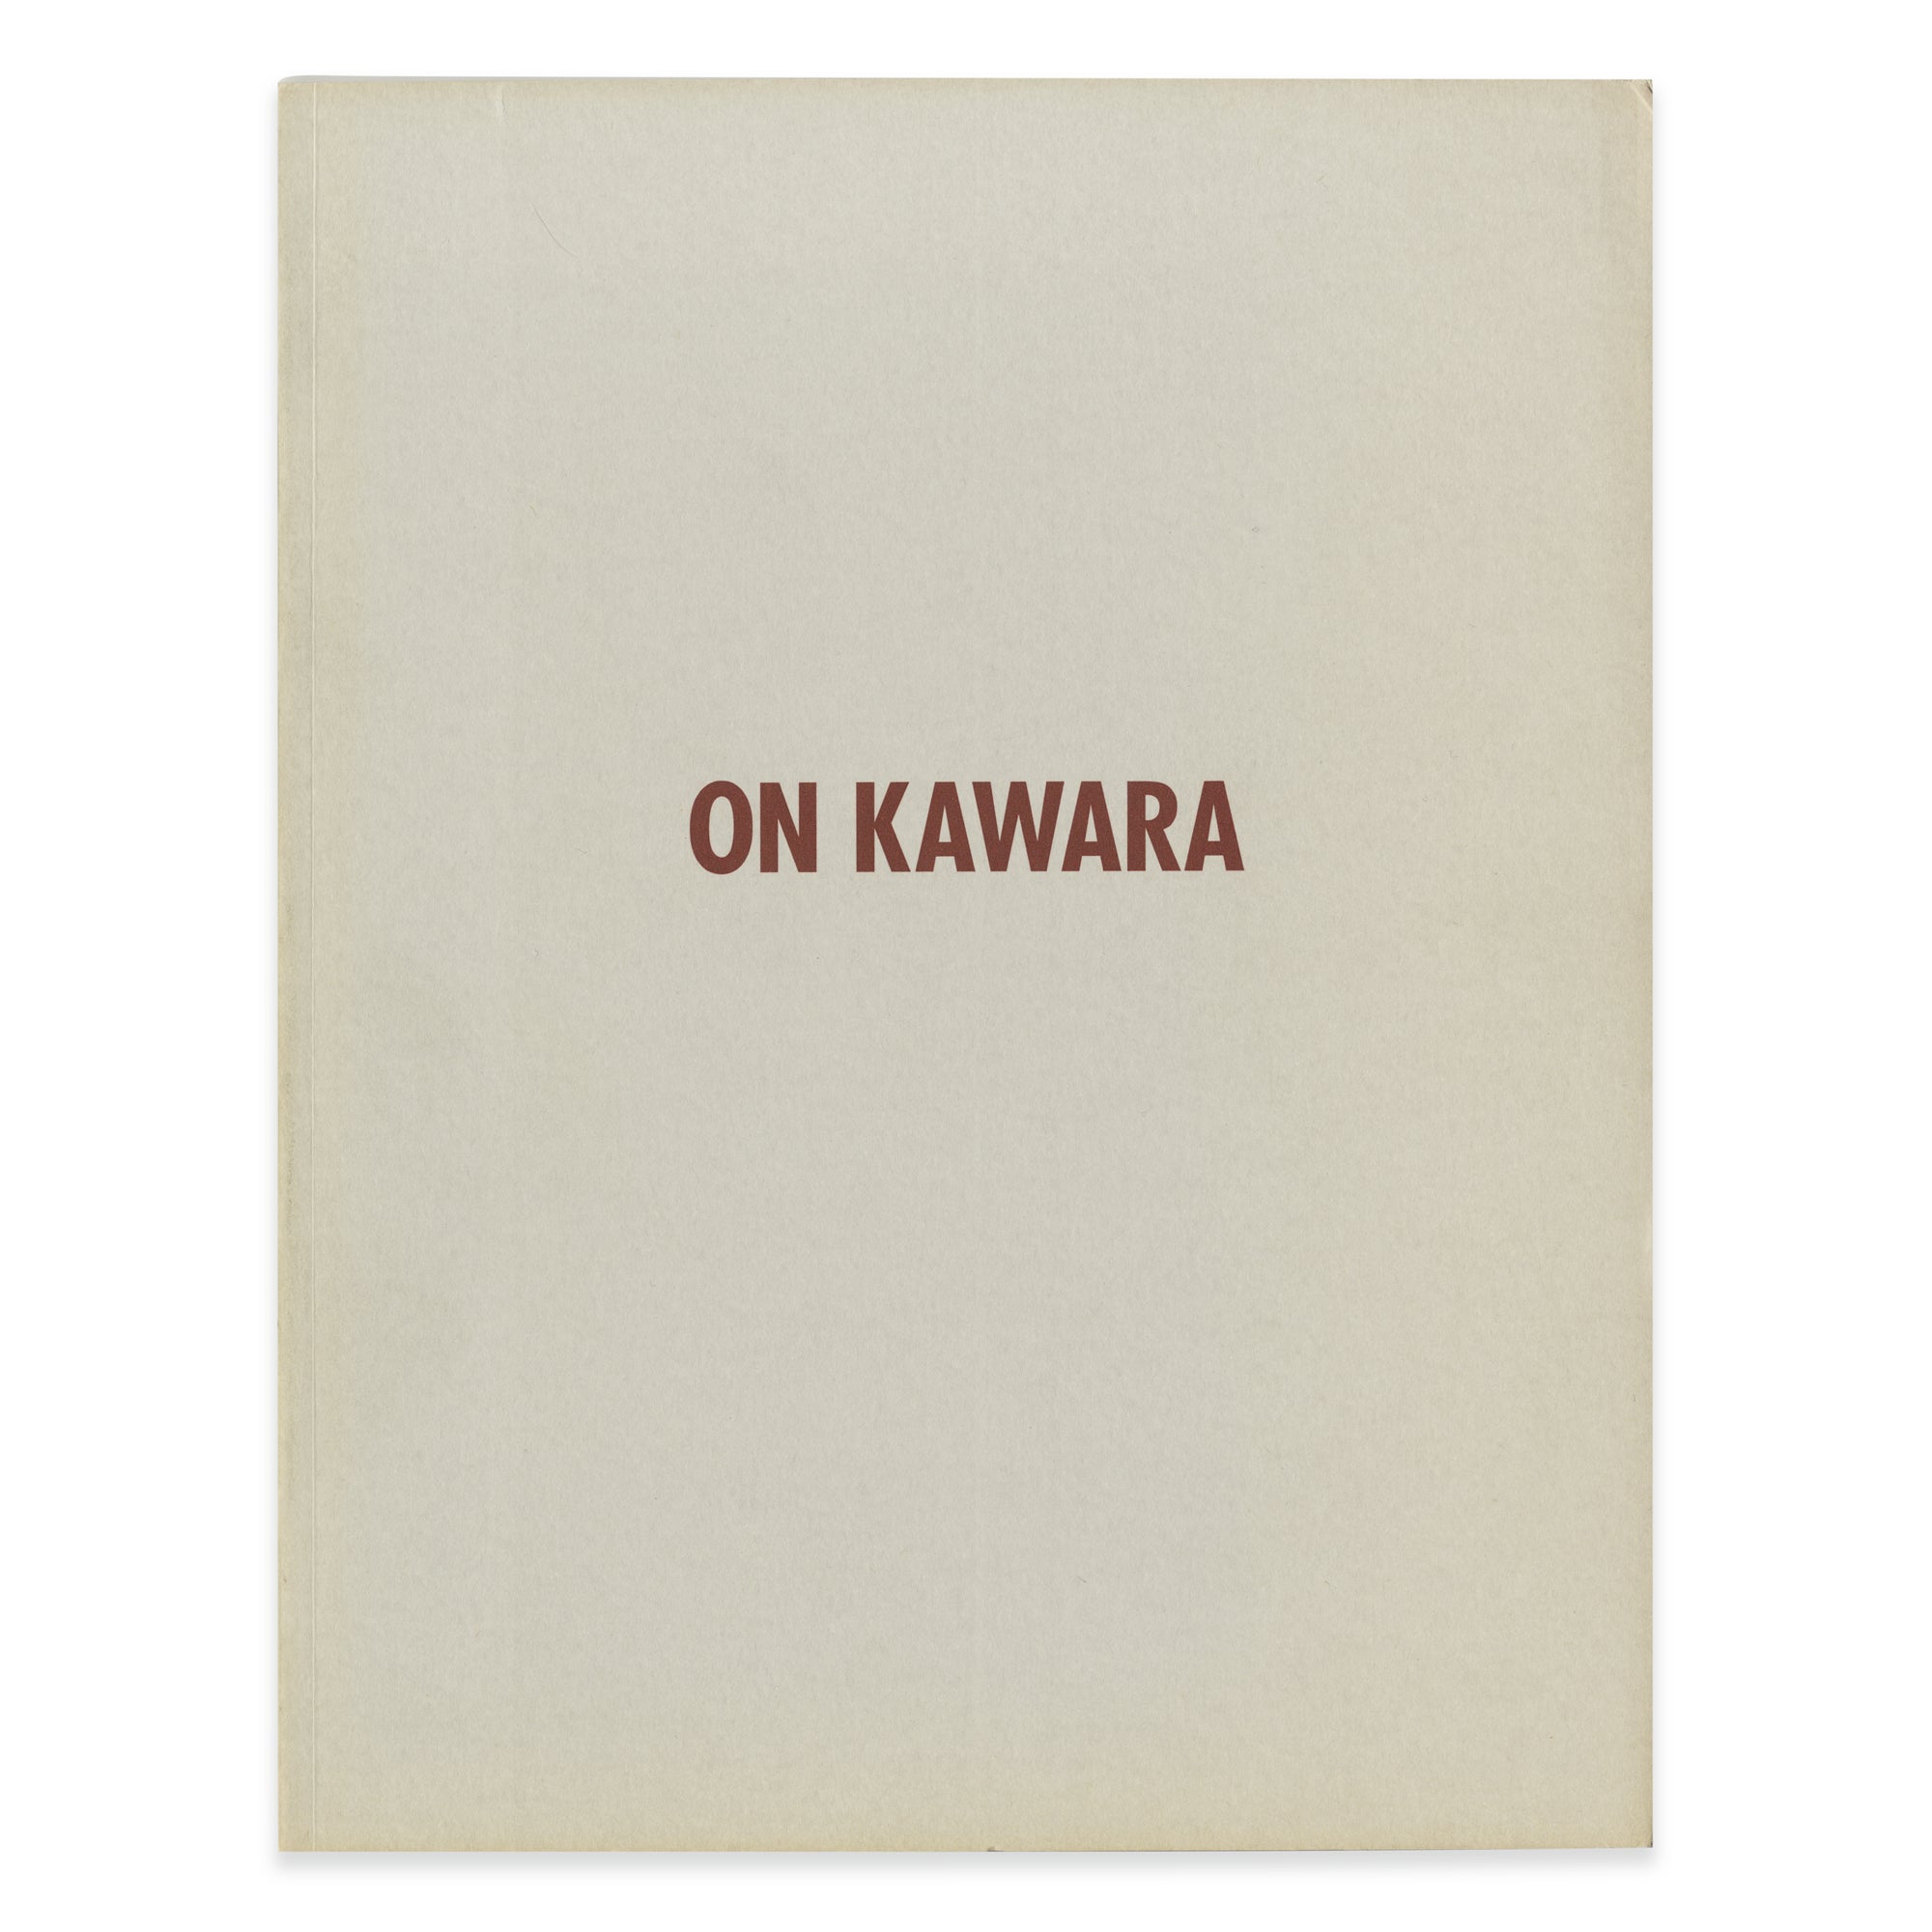 On Kawara – Single Eyelid